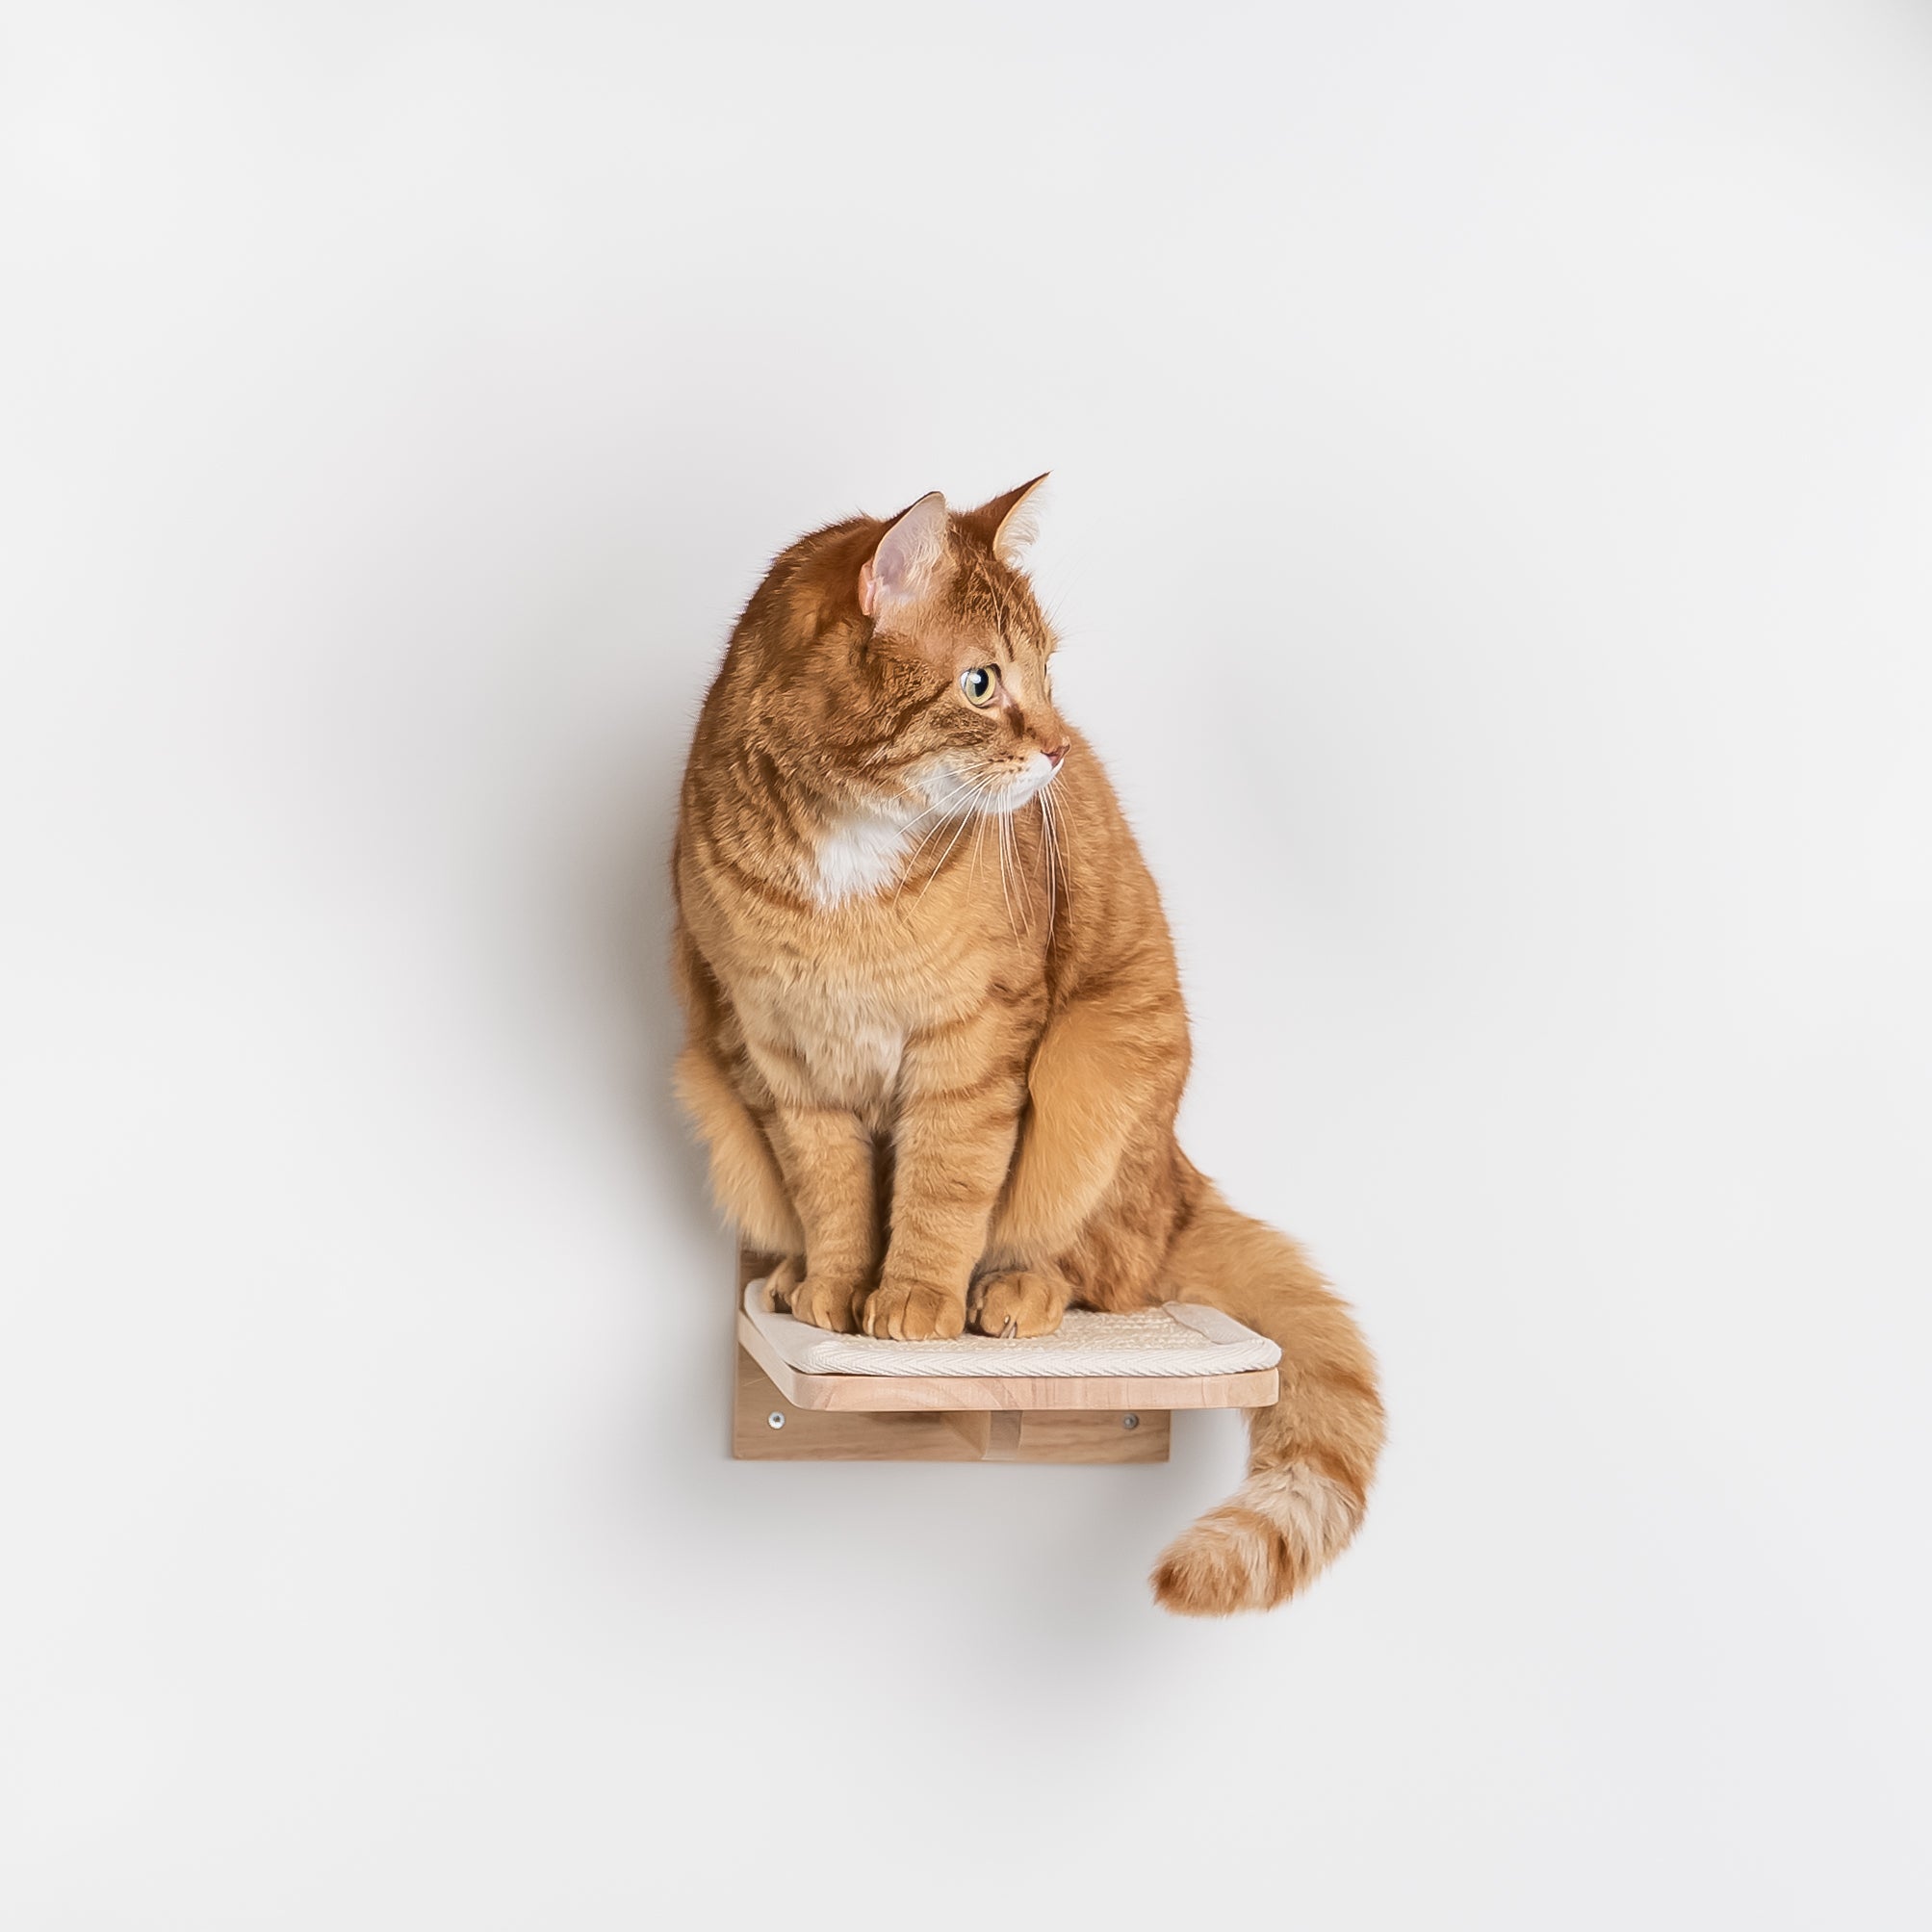 Misbruge ophobe maksimere Klatrevæg til katte - Vægplade - Sæt 3 (Beige) – RHR Pets DK